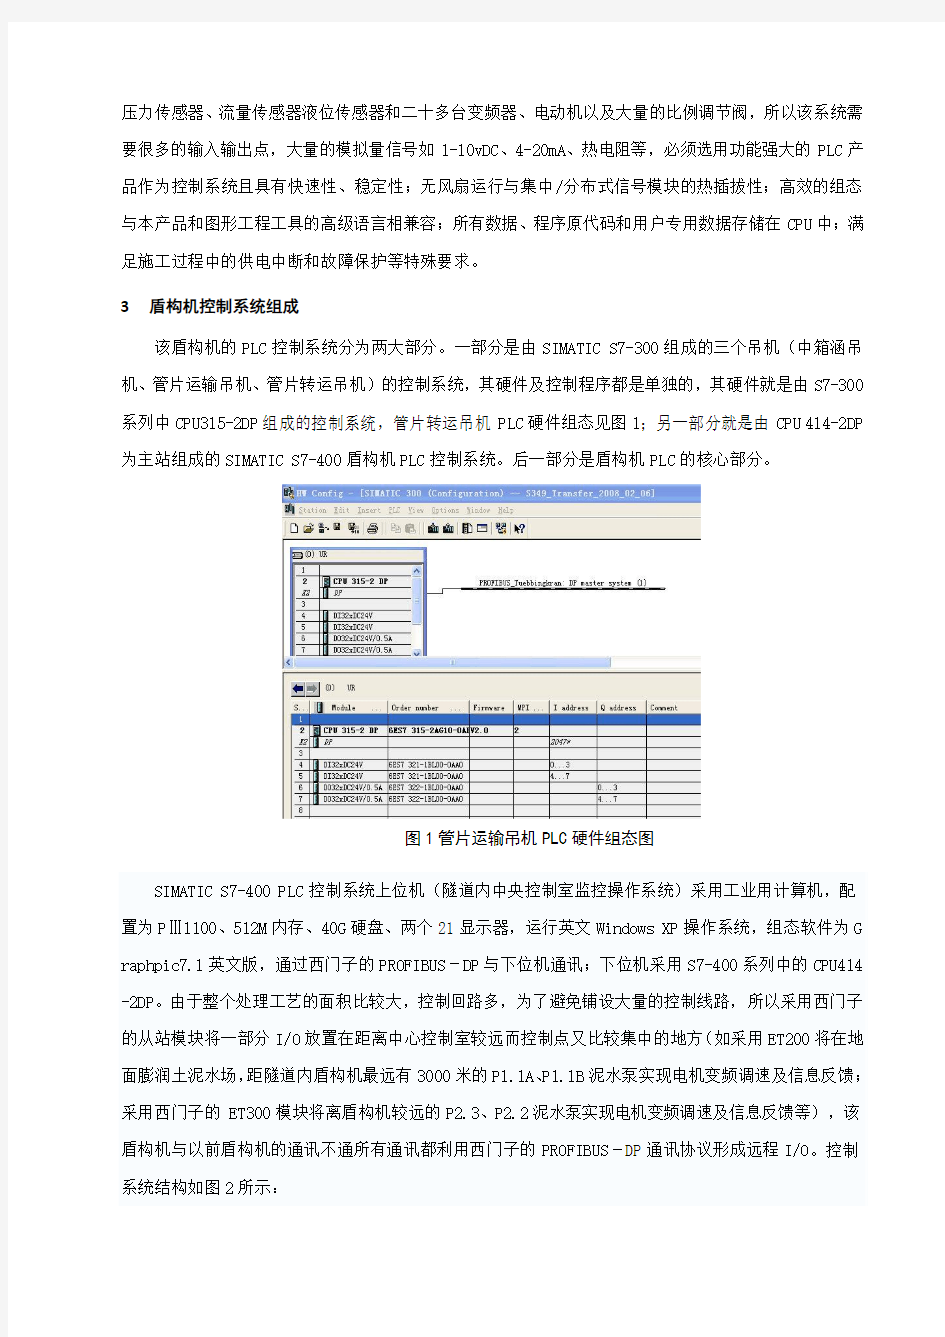 PLC在南京长江隧道盾构机上的应用